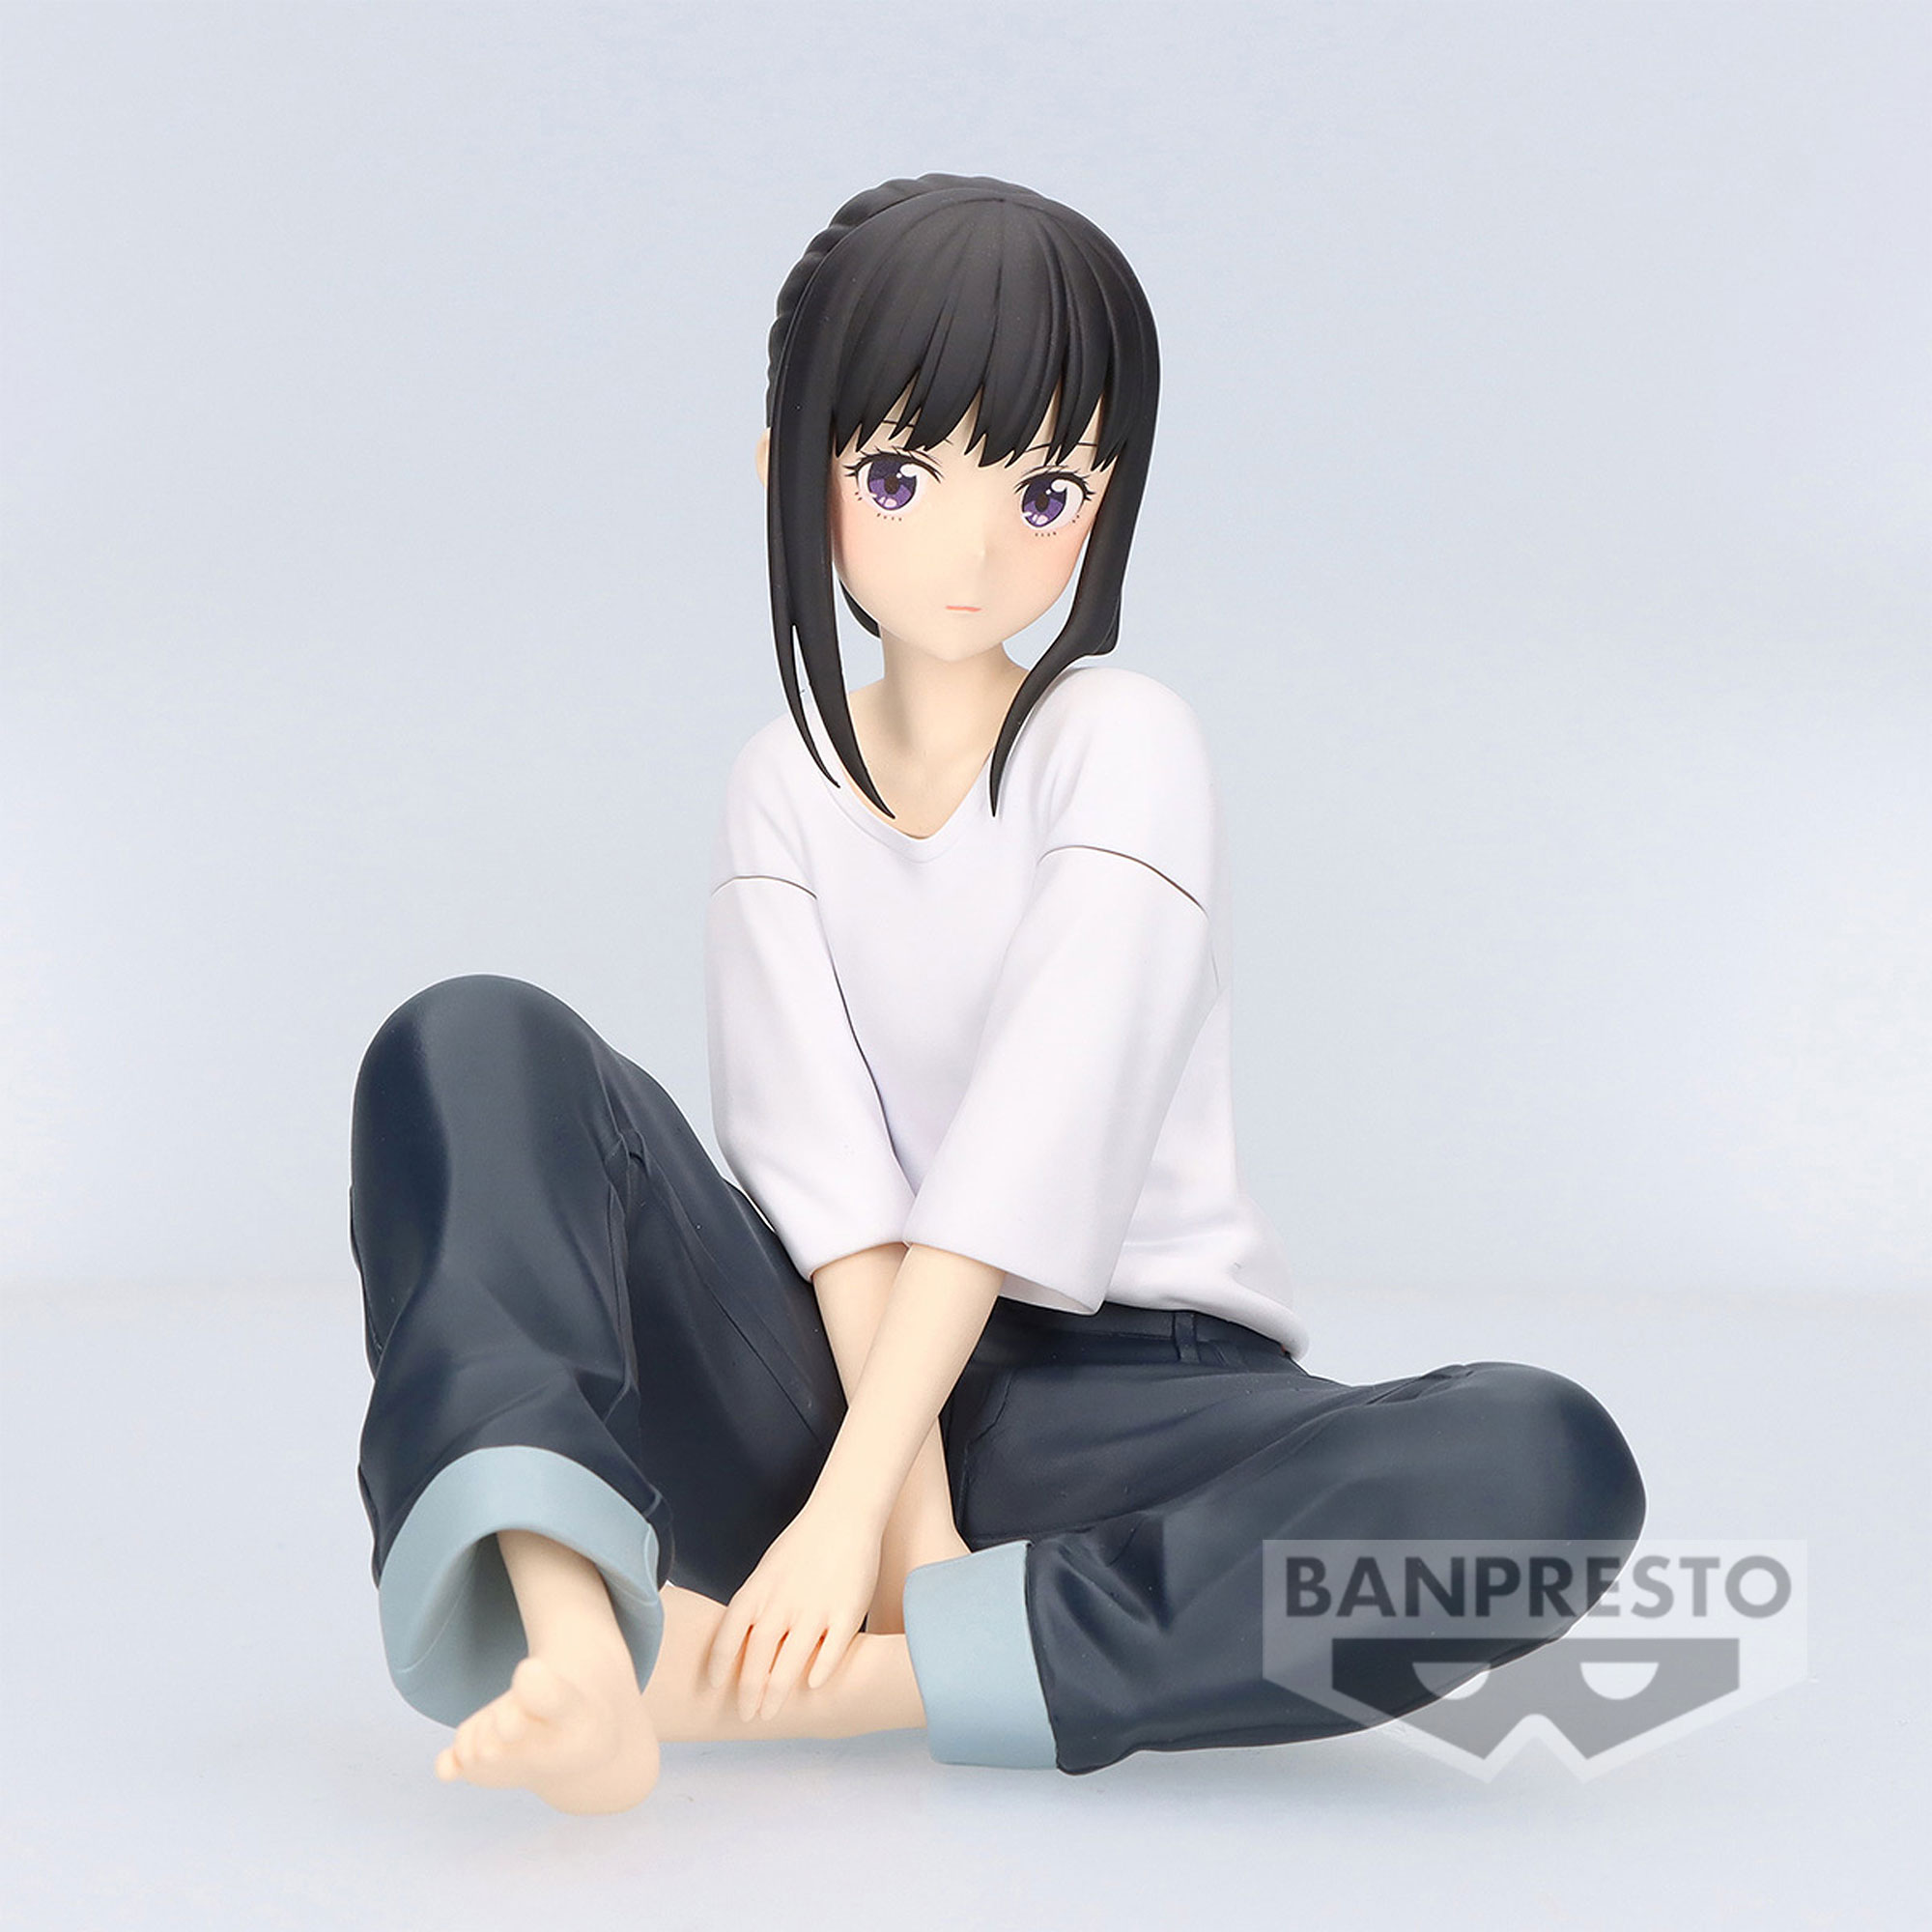 𝓣𝓪𝓴𝓲𝓷𝓪 𝓘𝓷𝓸𝓾𝓮 | Animation art character design, Manga anime girl,  Anime akatsuki